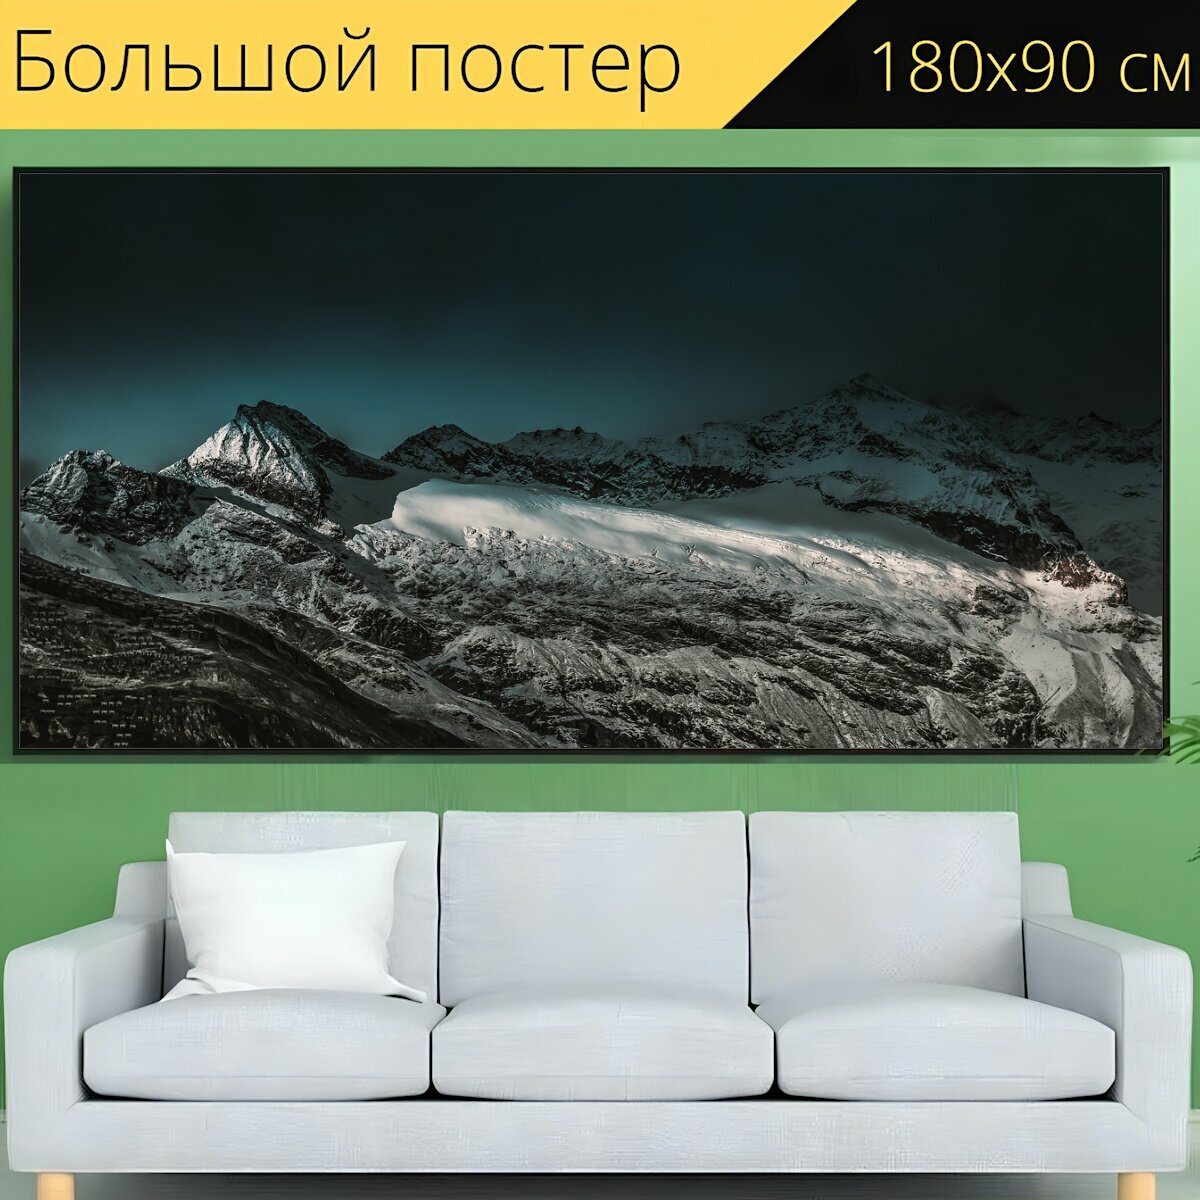 Большой постер "Гора, пейзаж, природа" 180 x 90 см. для интерьера